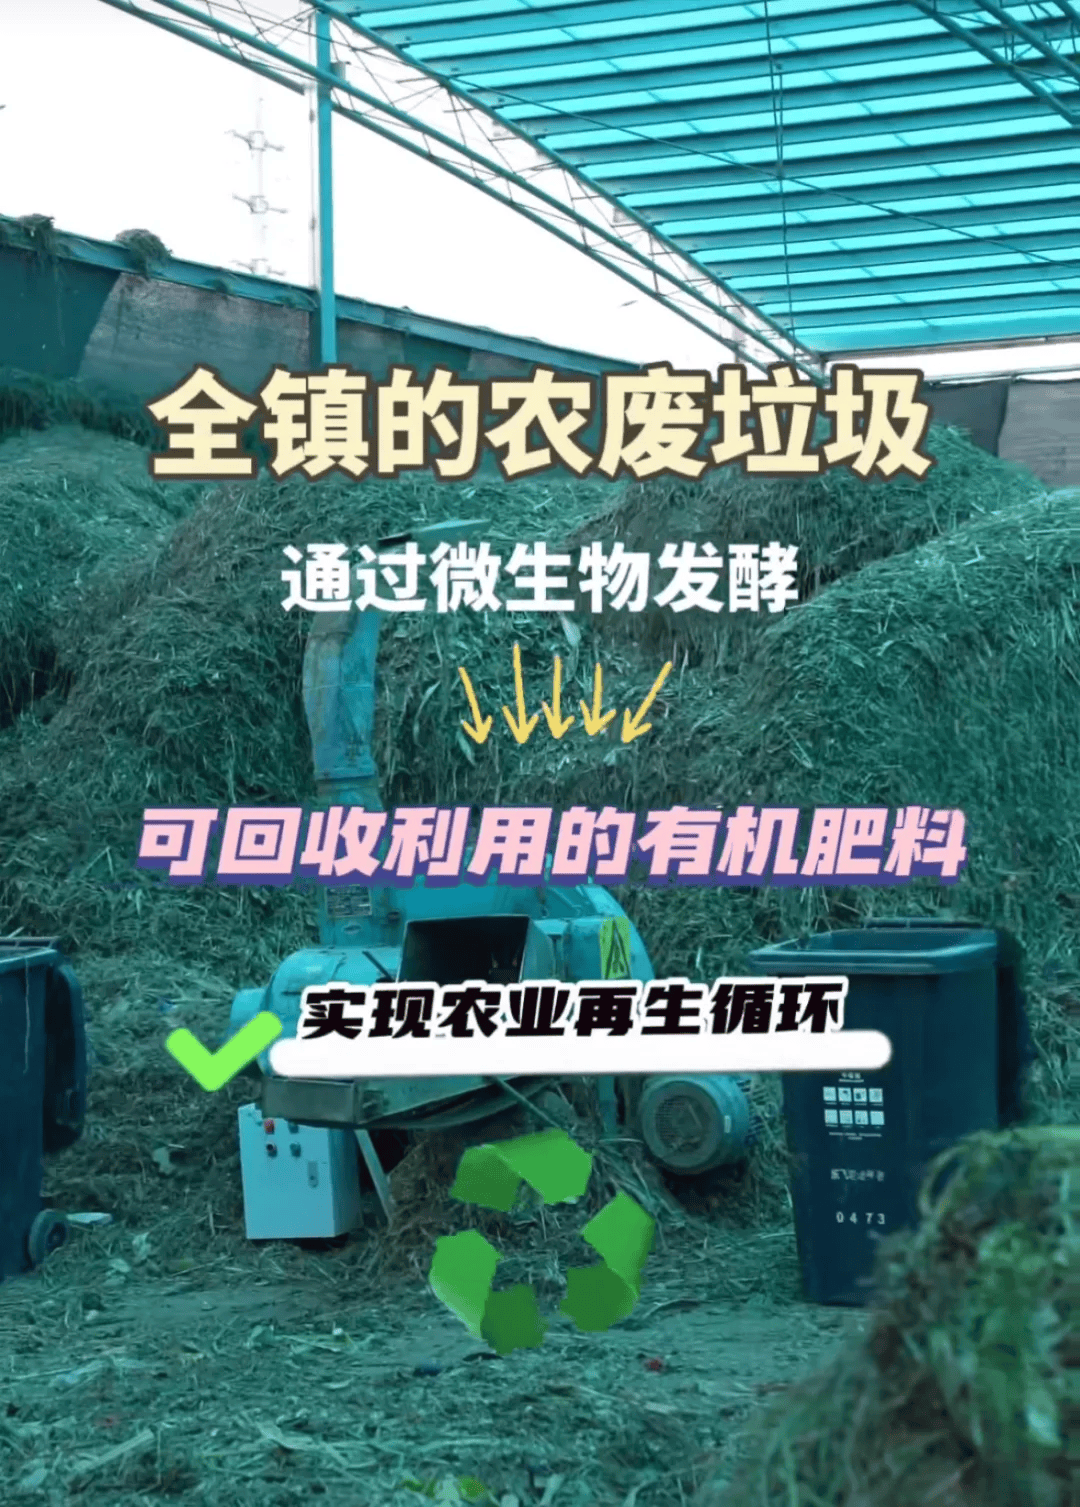 上海老港镇农业资源循环应用基地最新动态